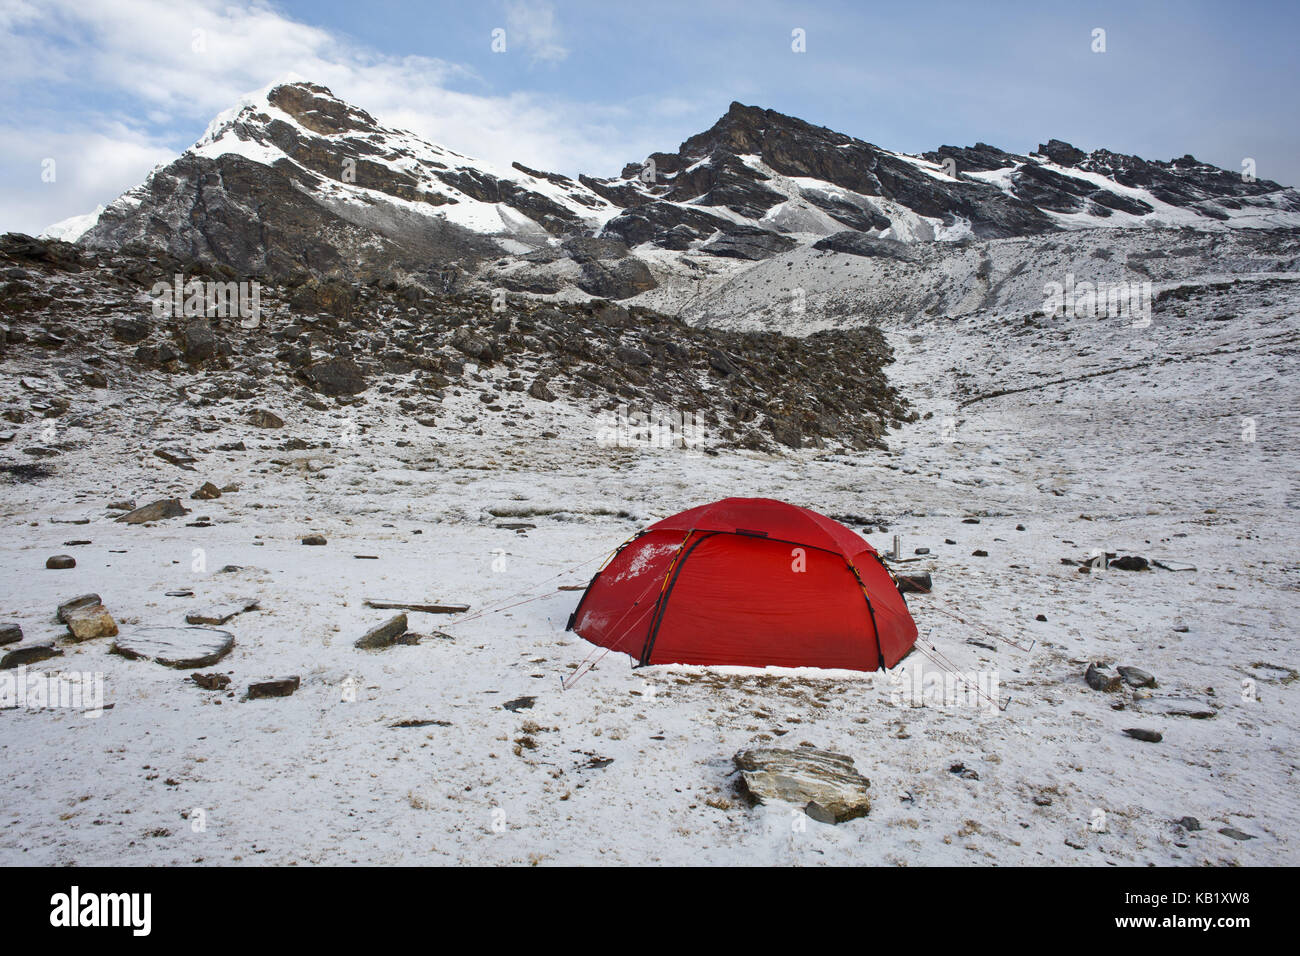 Bolivia, Cordillera Apolobamba, tent, snow, Stock Photo